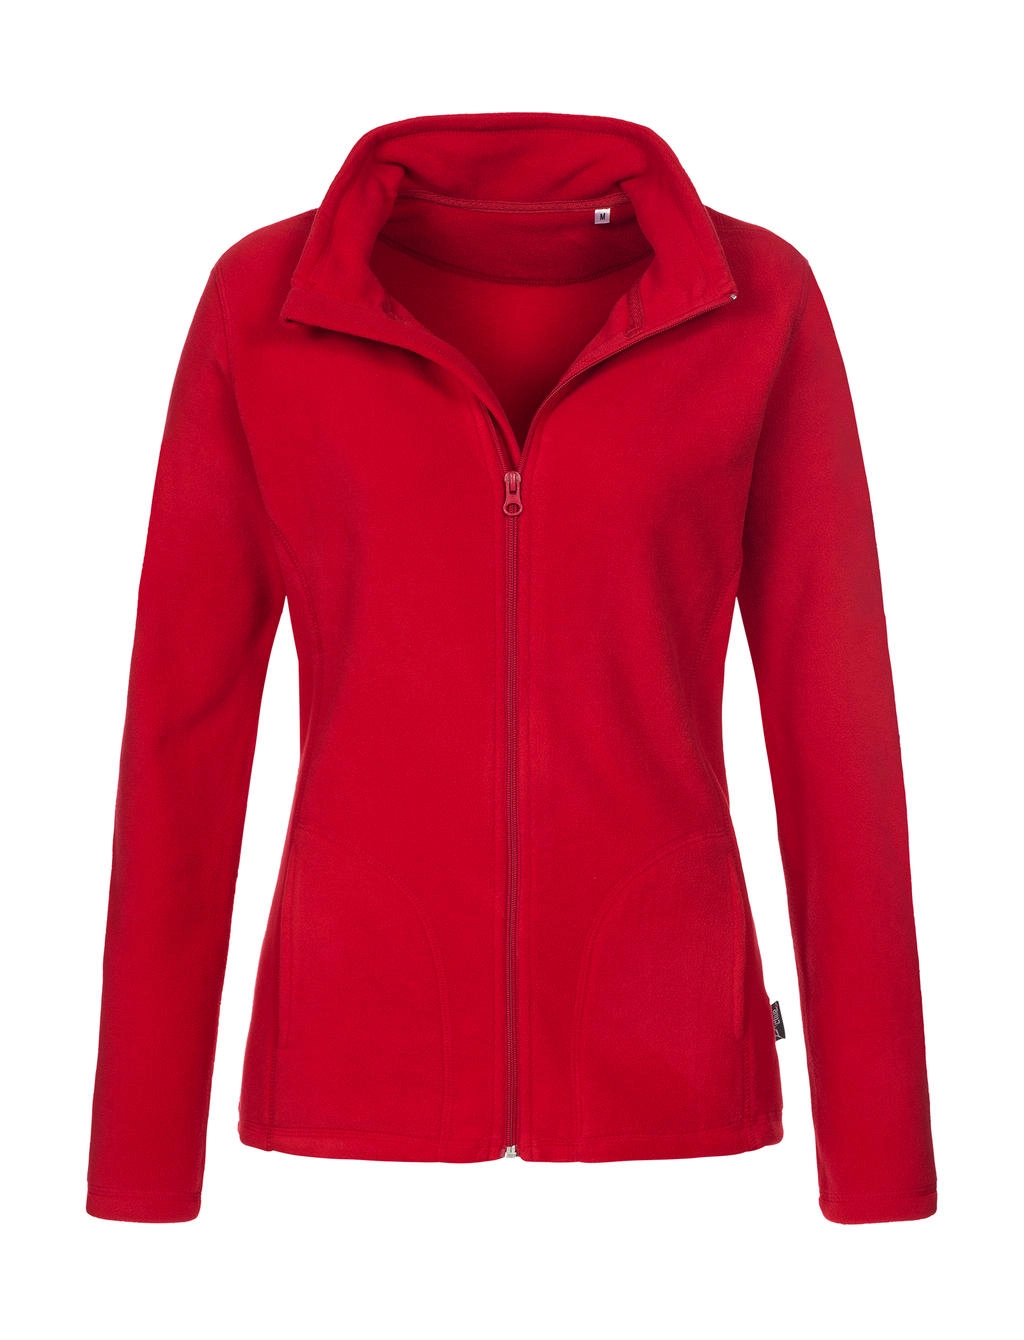 Fleece Jacket Women zum Besticken und Bedrucken in der Farbe Scarlet Red mit Ihren Logo, Schriftzug oder Motiv.